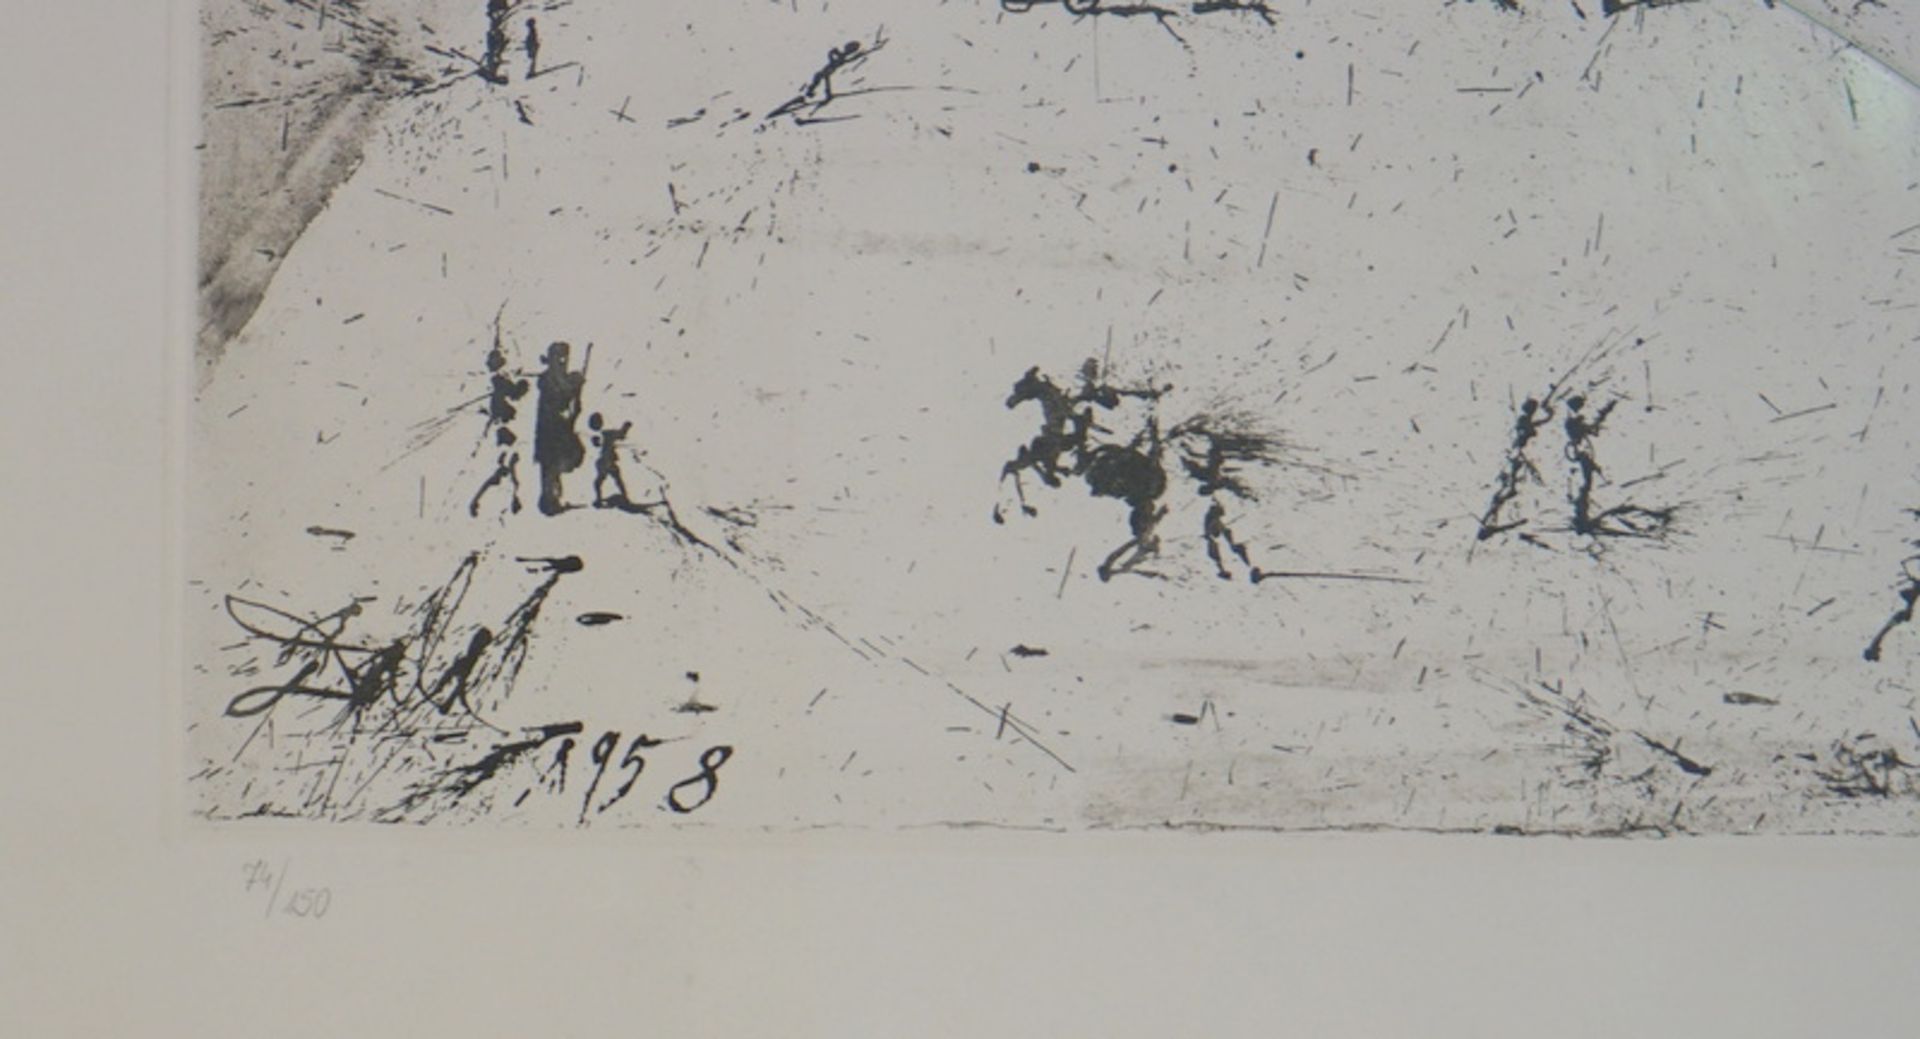 Dali y Domenech, Salvador Felipe Jacinto: “La grande Place des Vosges du temps de Louis XVII”, sign - Image 2 of 2